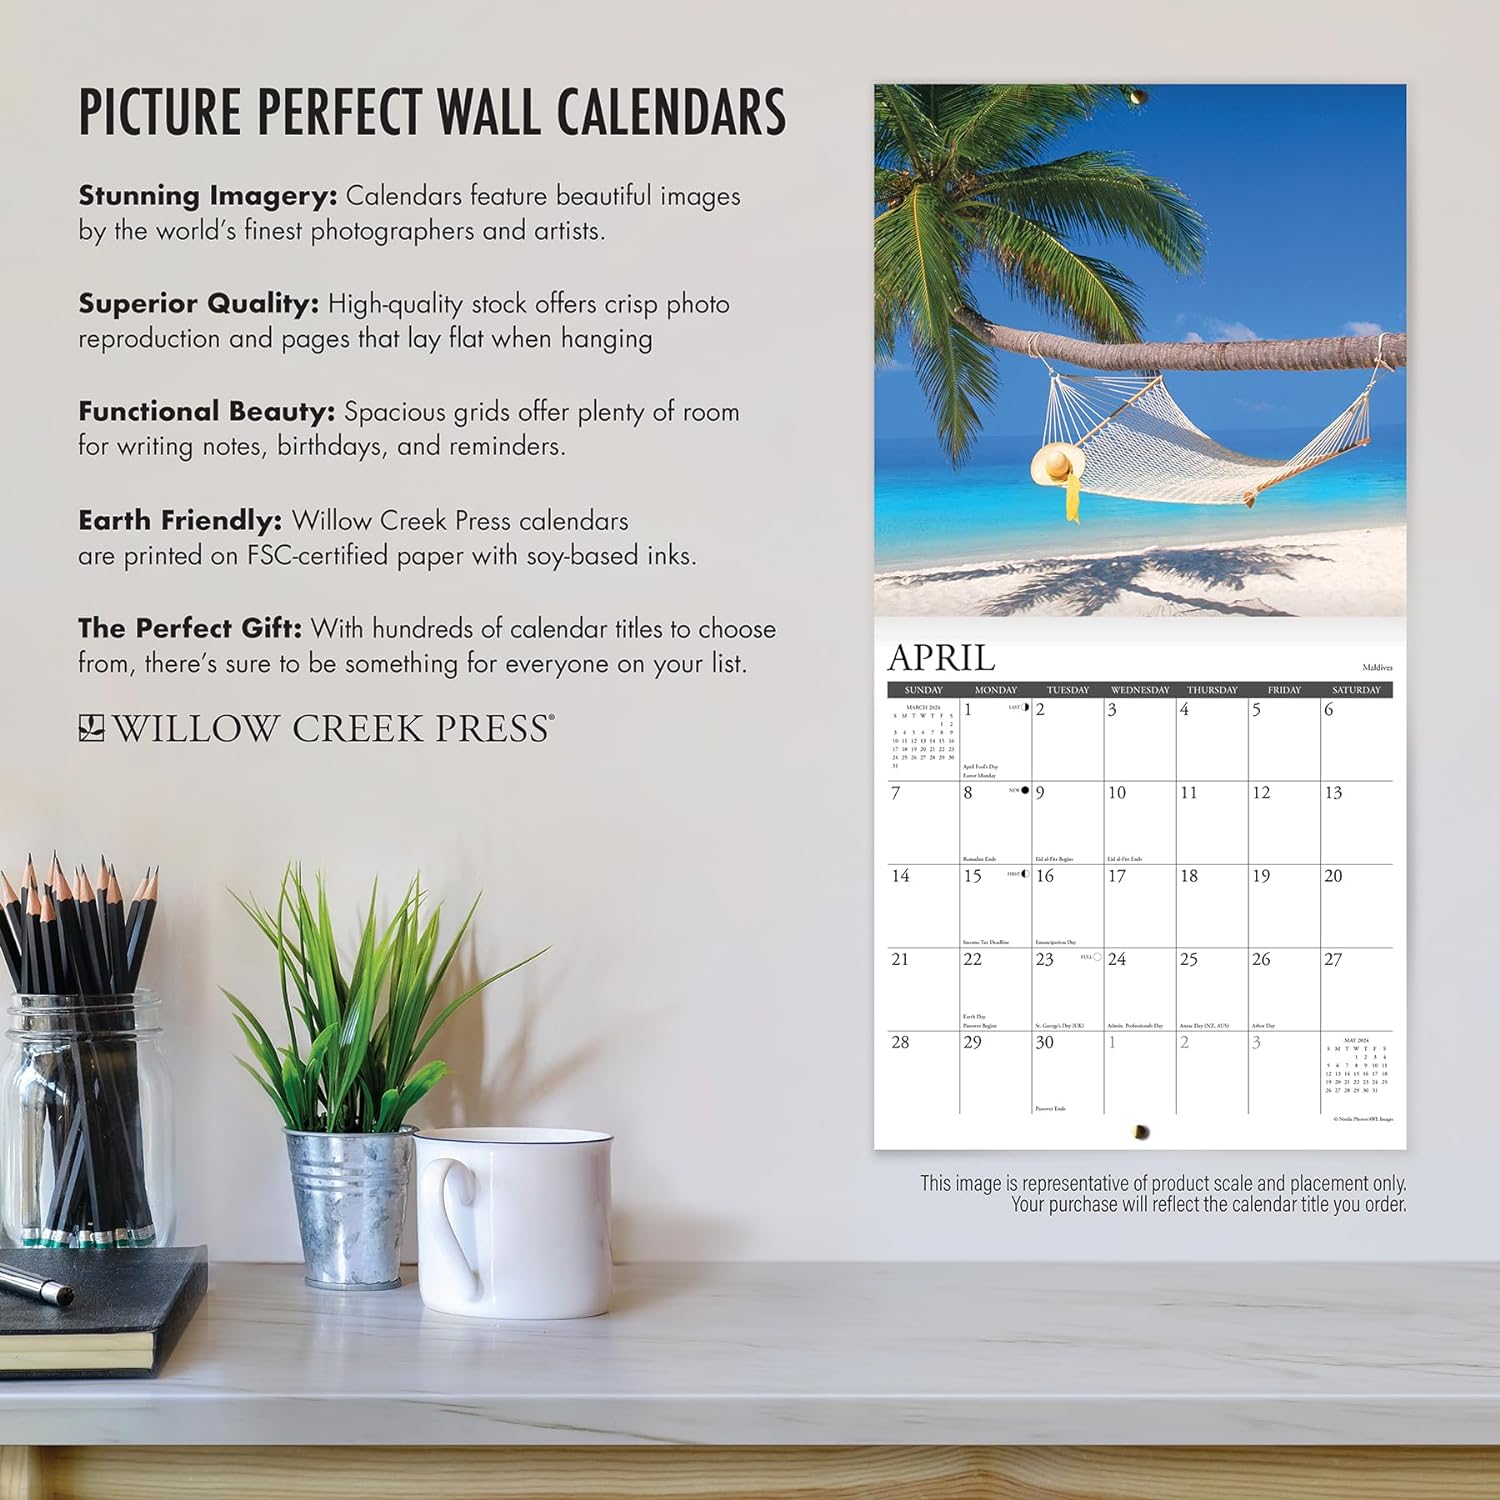 ocean-view-monthly-2024-wall-calendar